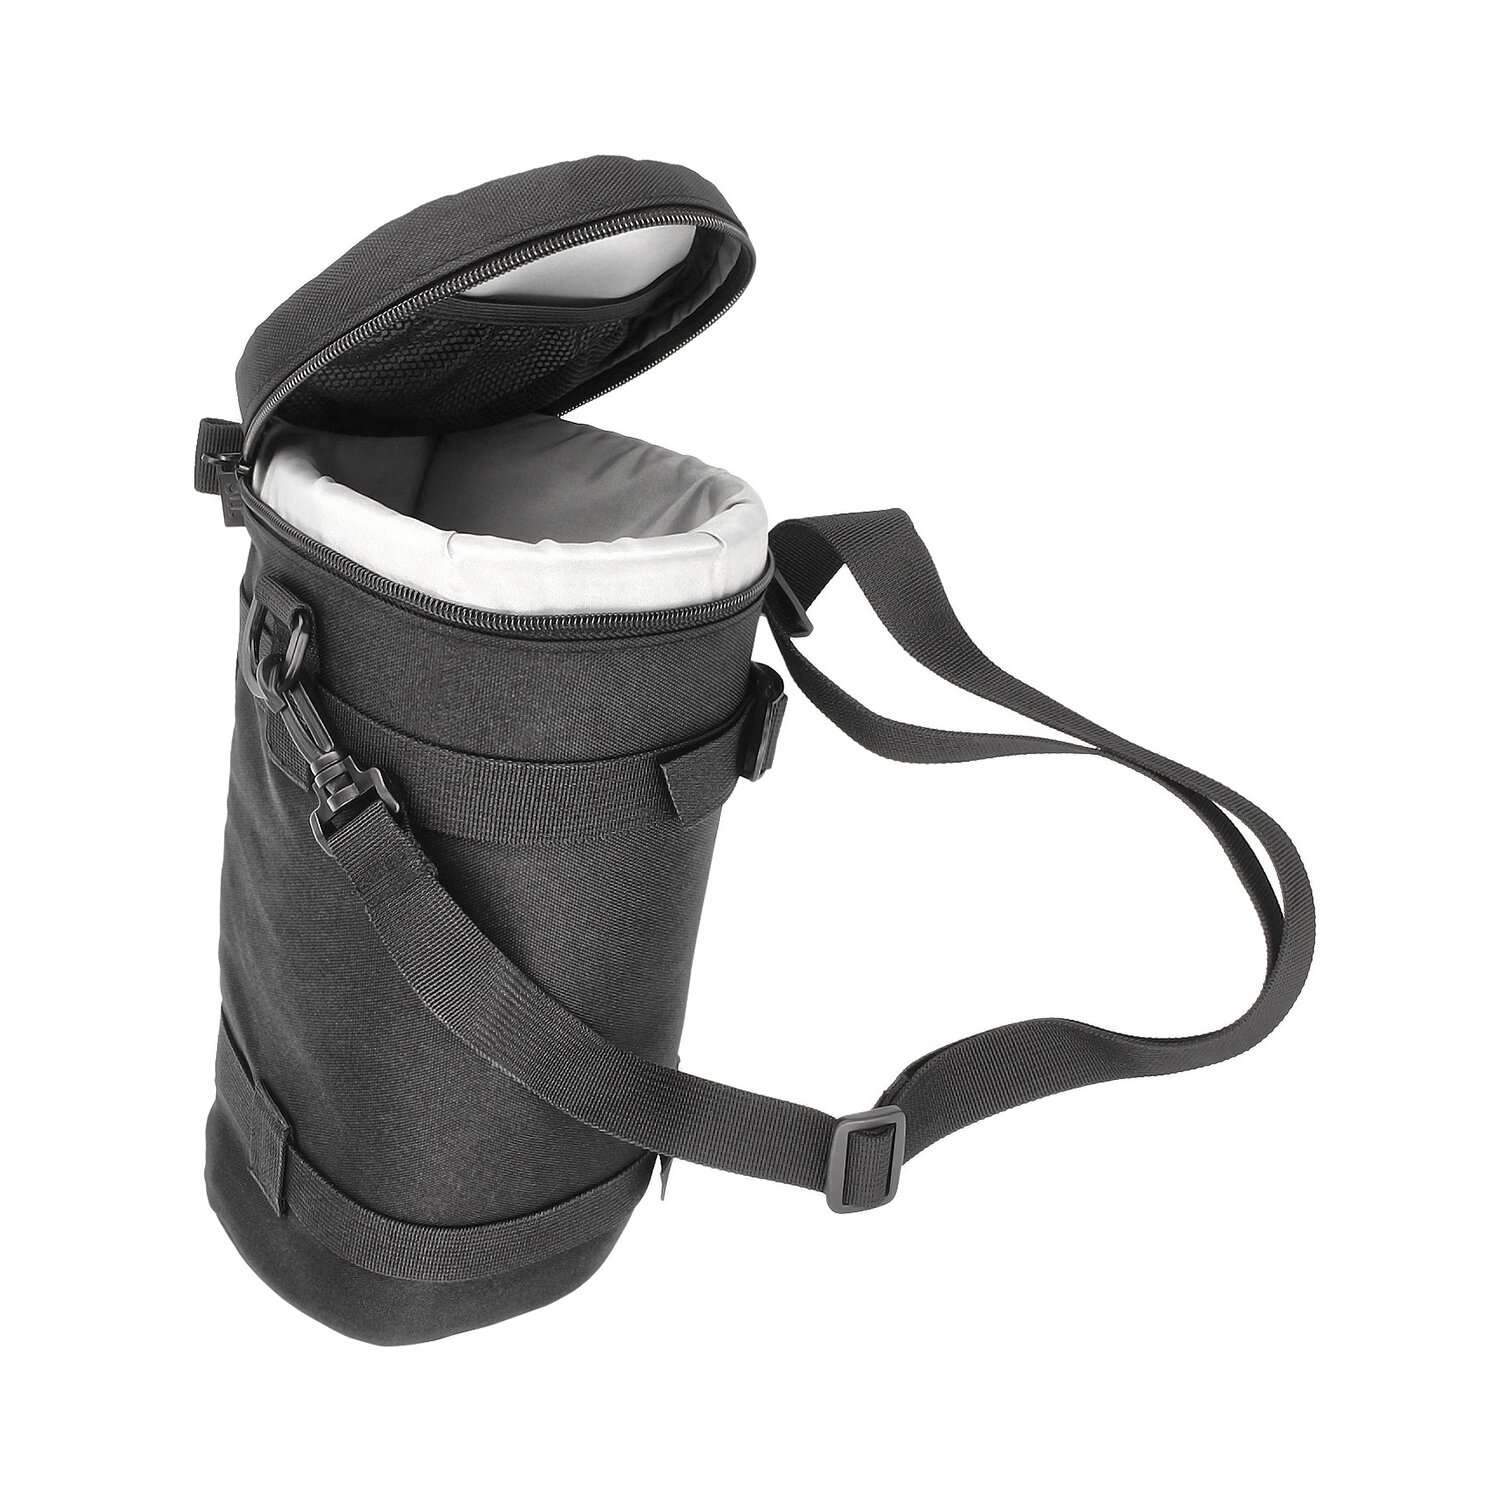 Objektivtasche Objektivköcher Objektivbeutel für Kamera Objektive mit Schultergurt + Klettverschluss für den Gürtel – Innenmaß 310 x 124 mm – JJC Deluxe Lens Pouch DLP-7